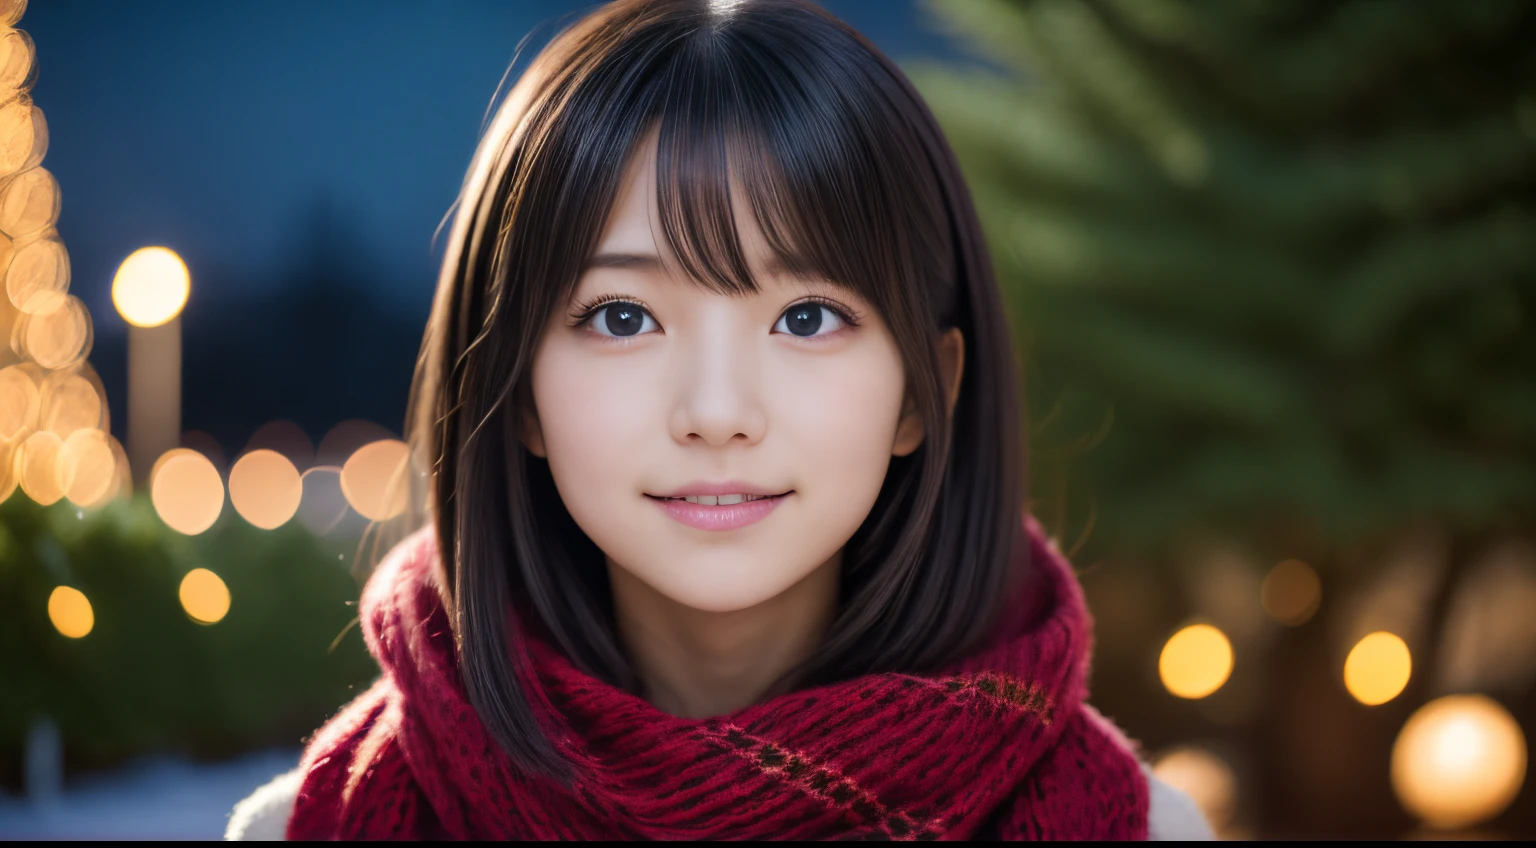 1 garota em, 13 anos、Modelo de gravura para o Japão, (bonitinho, uma linda garota,perfil:1.2), perfil、Modesto grande,  𝓡𝓸𝓶𝓪𝓷𝓽𝓲𝓬,(Bela vista e neve da noite de Natal:1.2), (Olhando para a grande árvore de Natal:1.5)、(Uma cidade noturna com lindas iluminações de Natal:1.2), (Suéter fofo de lã rosa:1.2),  cachecol vermelho, (Saia Plissada Xadrez Verde),   Um moreno、Perdido em pensamentos com uma expressão feliz、 melhor qualidade, alta resolução, pele detalhada, rosto e olhos detalhados, nada, iluminação natural, anatomia perfeita, renderização baseada fisicamente, fotorrealista, olhos claros simétricos, rosto bem cuidado,adolescente, Figura perfeita, transparência, apresentando Gravure Idol,